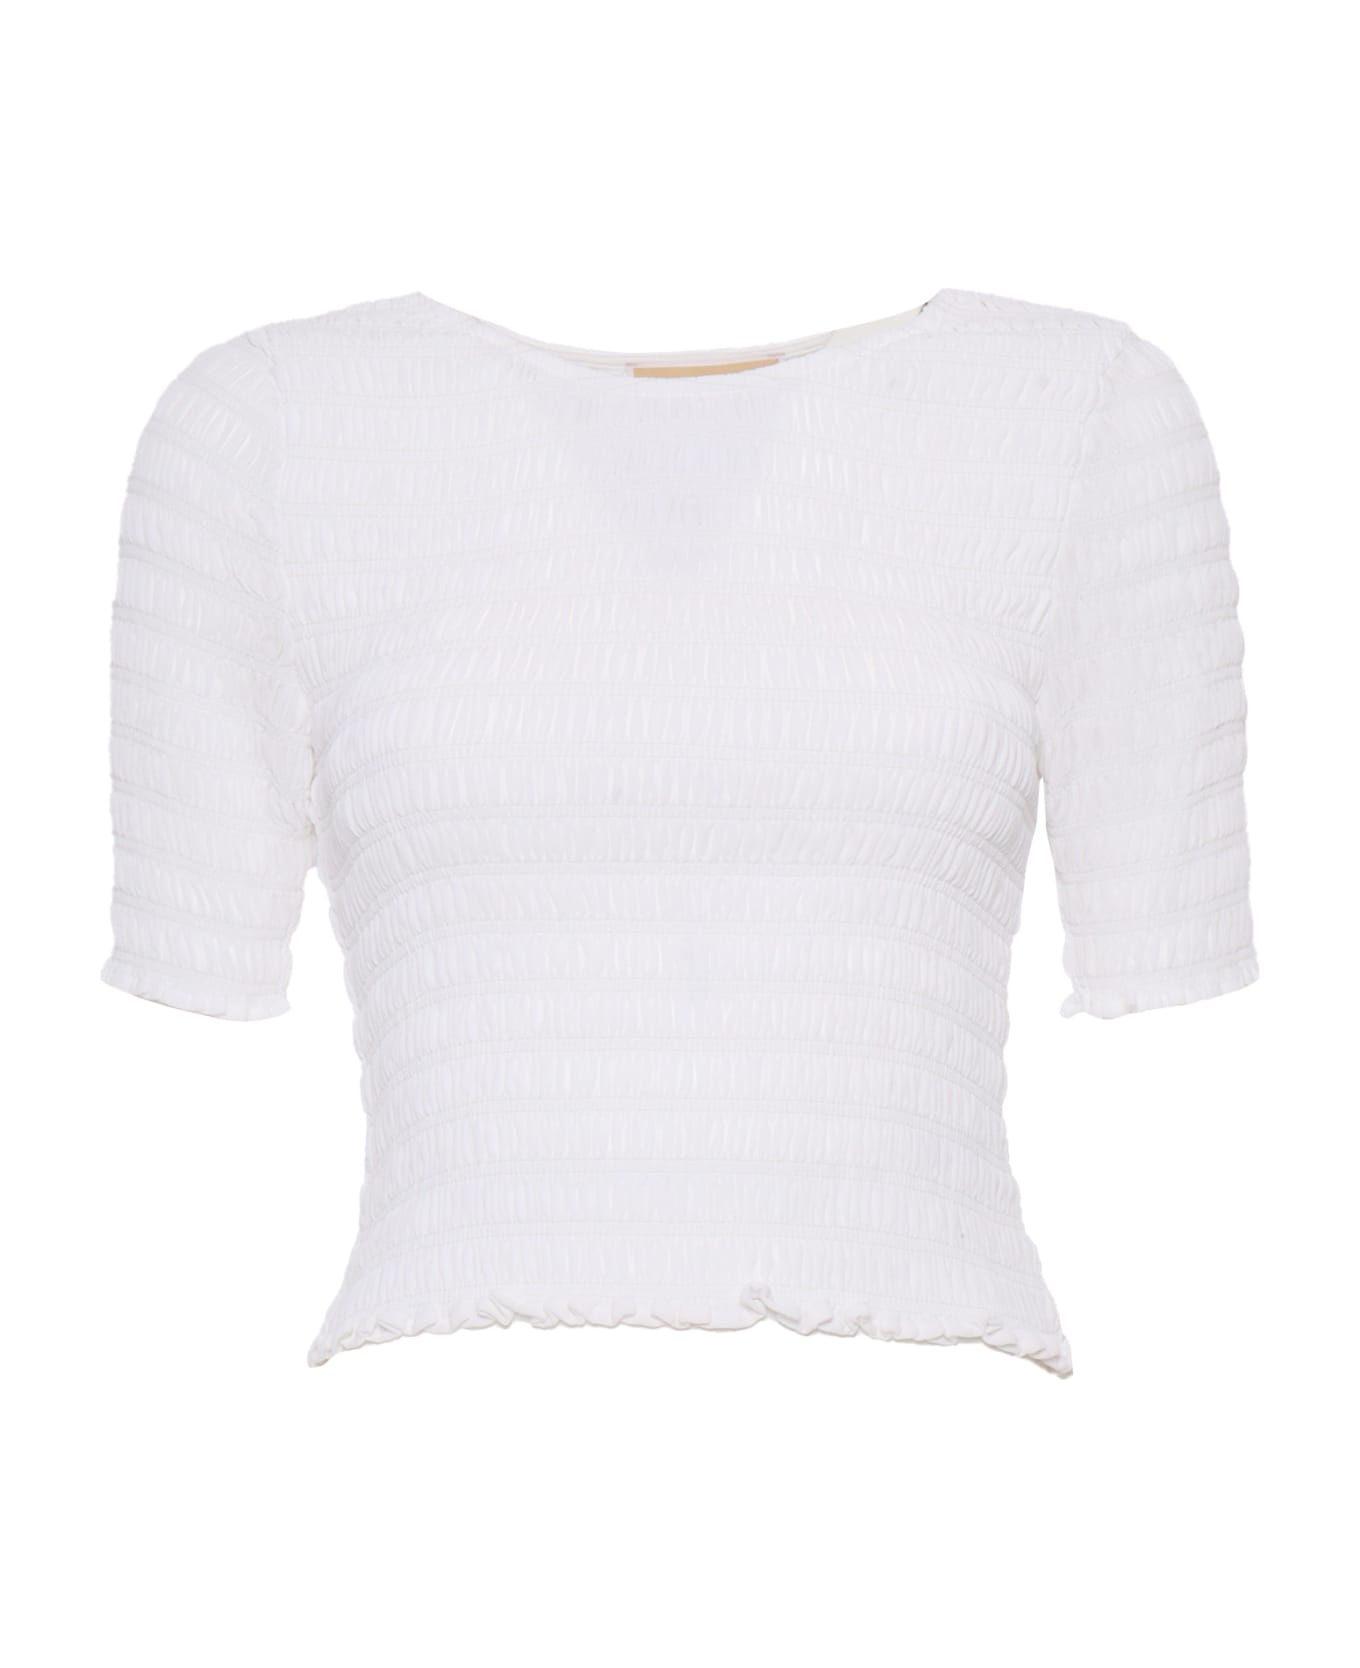 Michael Kors White Elastic Stretch T-shirt - White